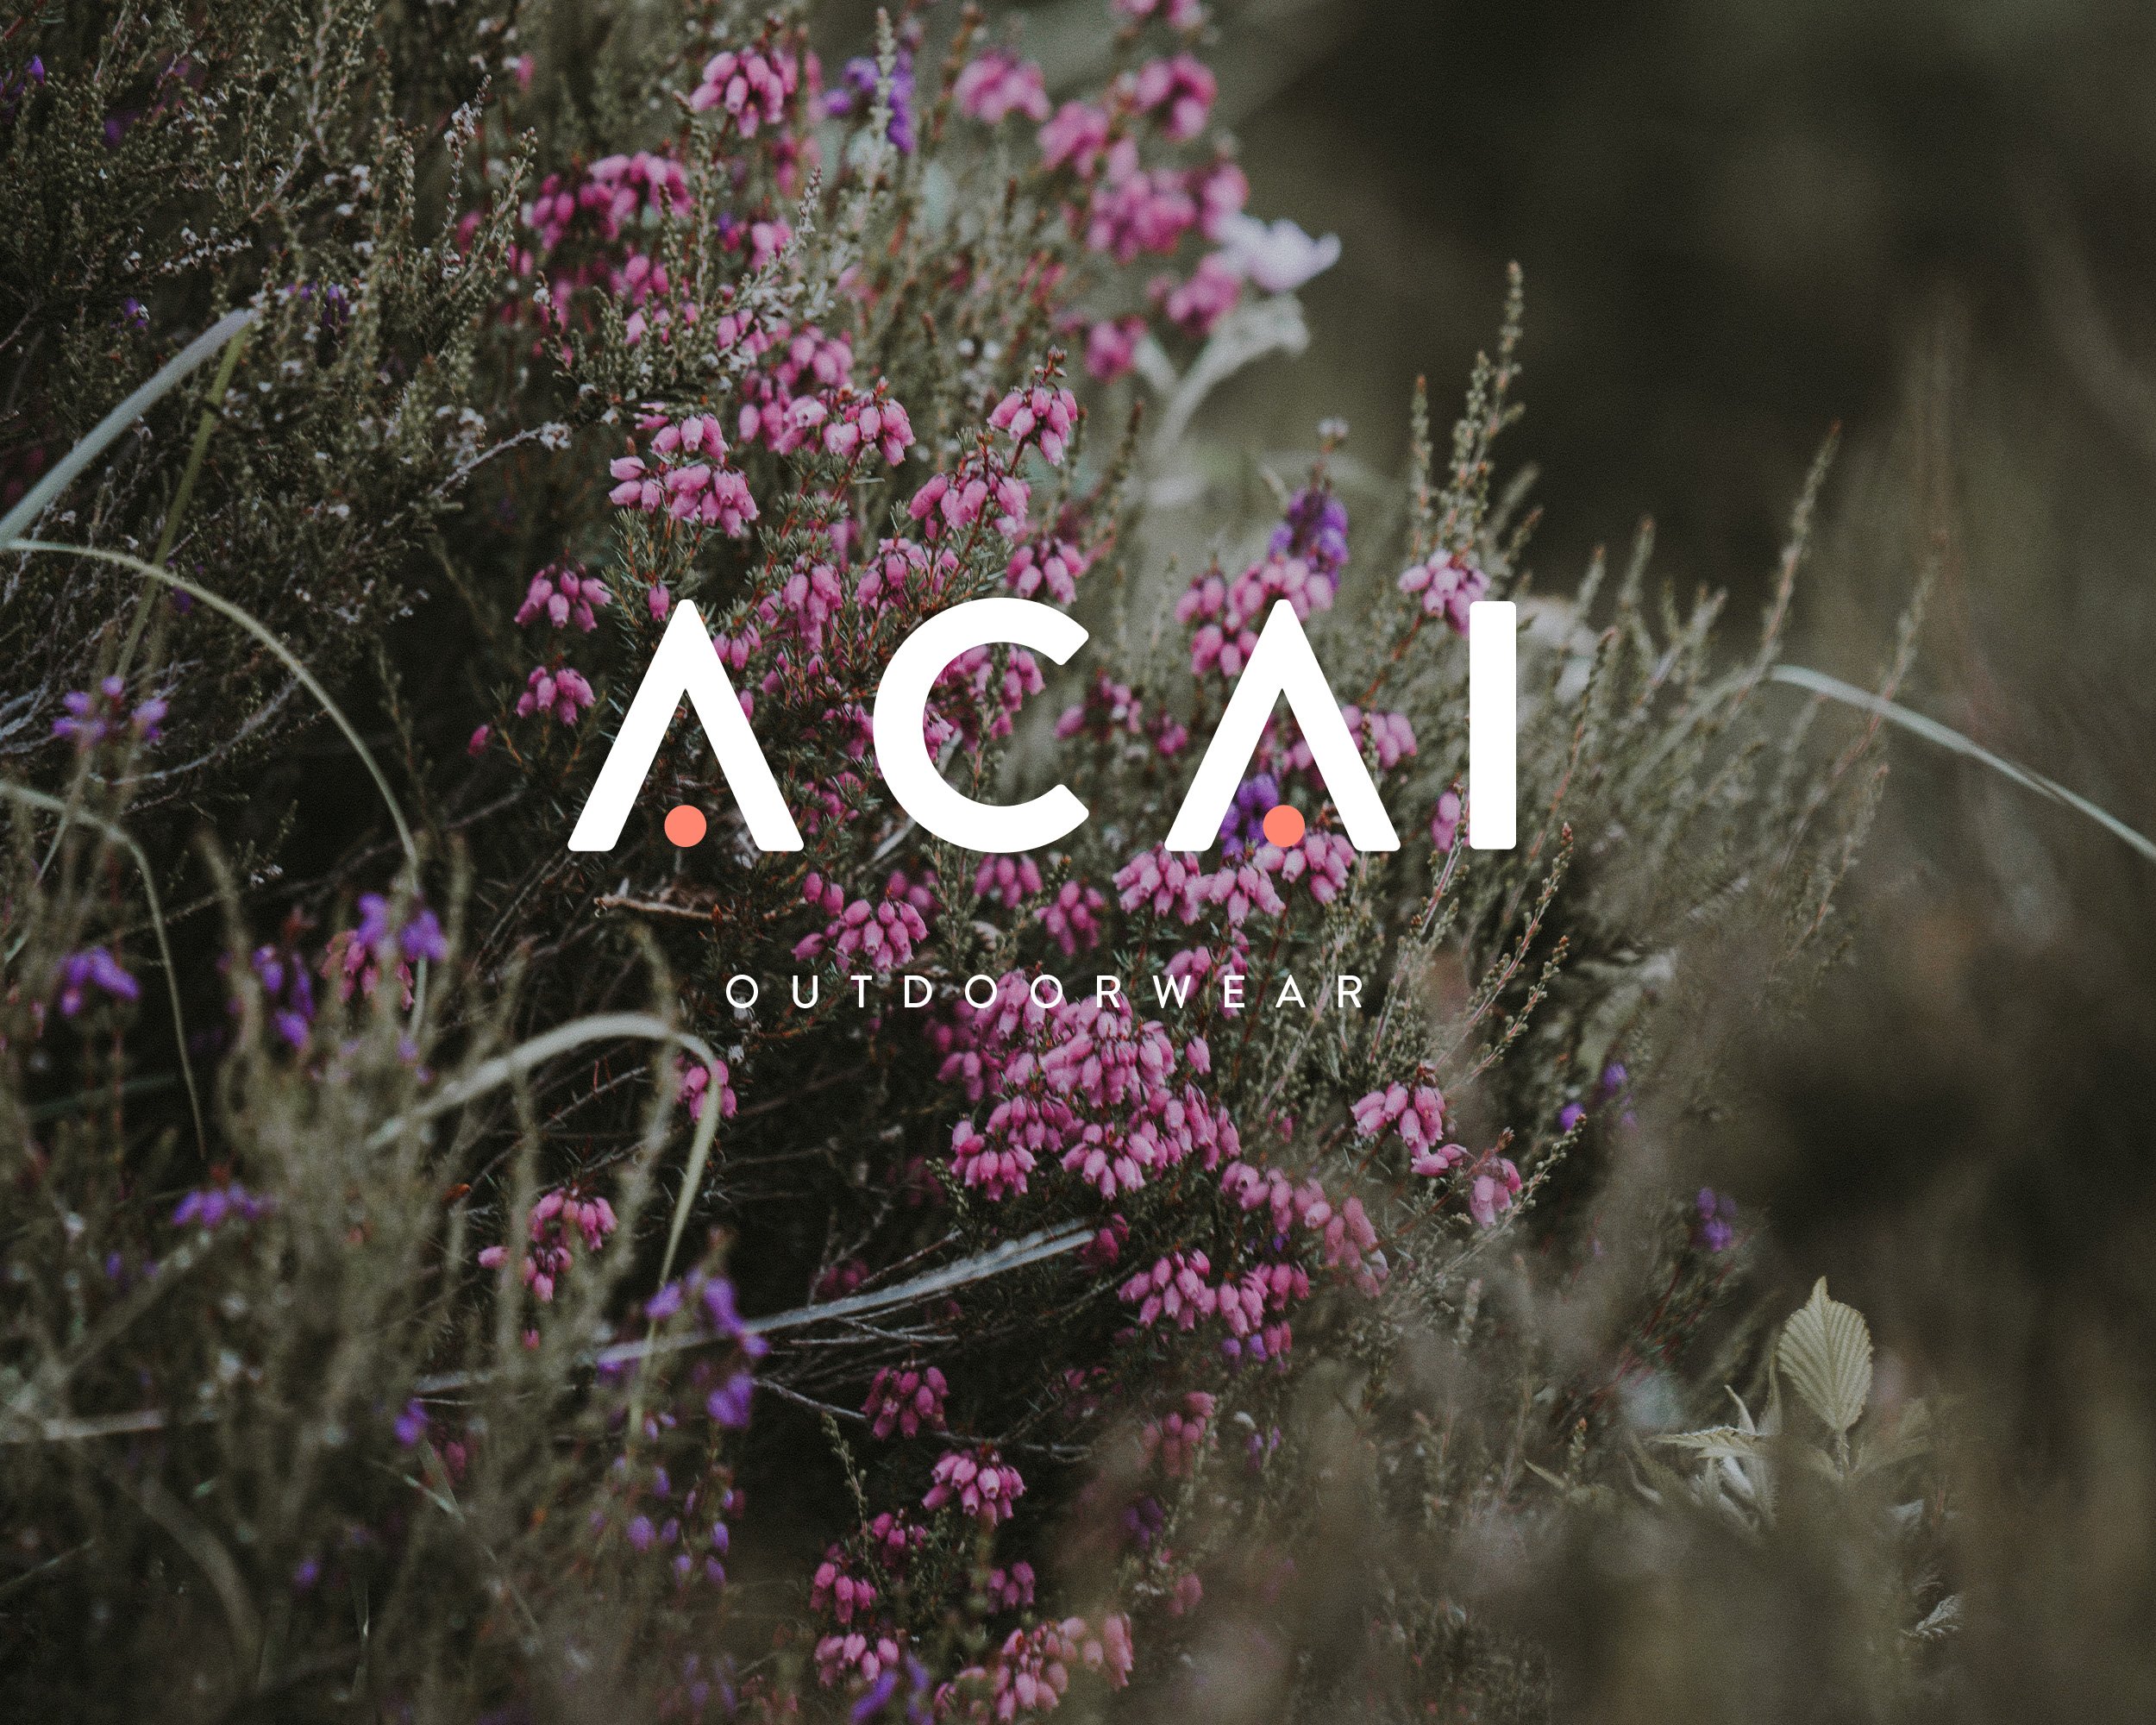 Acai Outdoorwear — Anna van der Feltz Creative